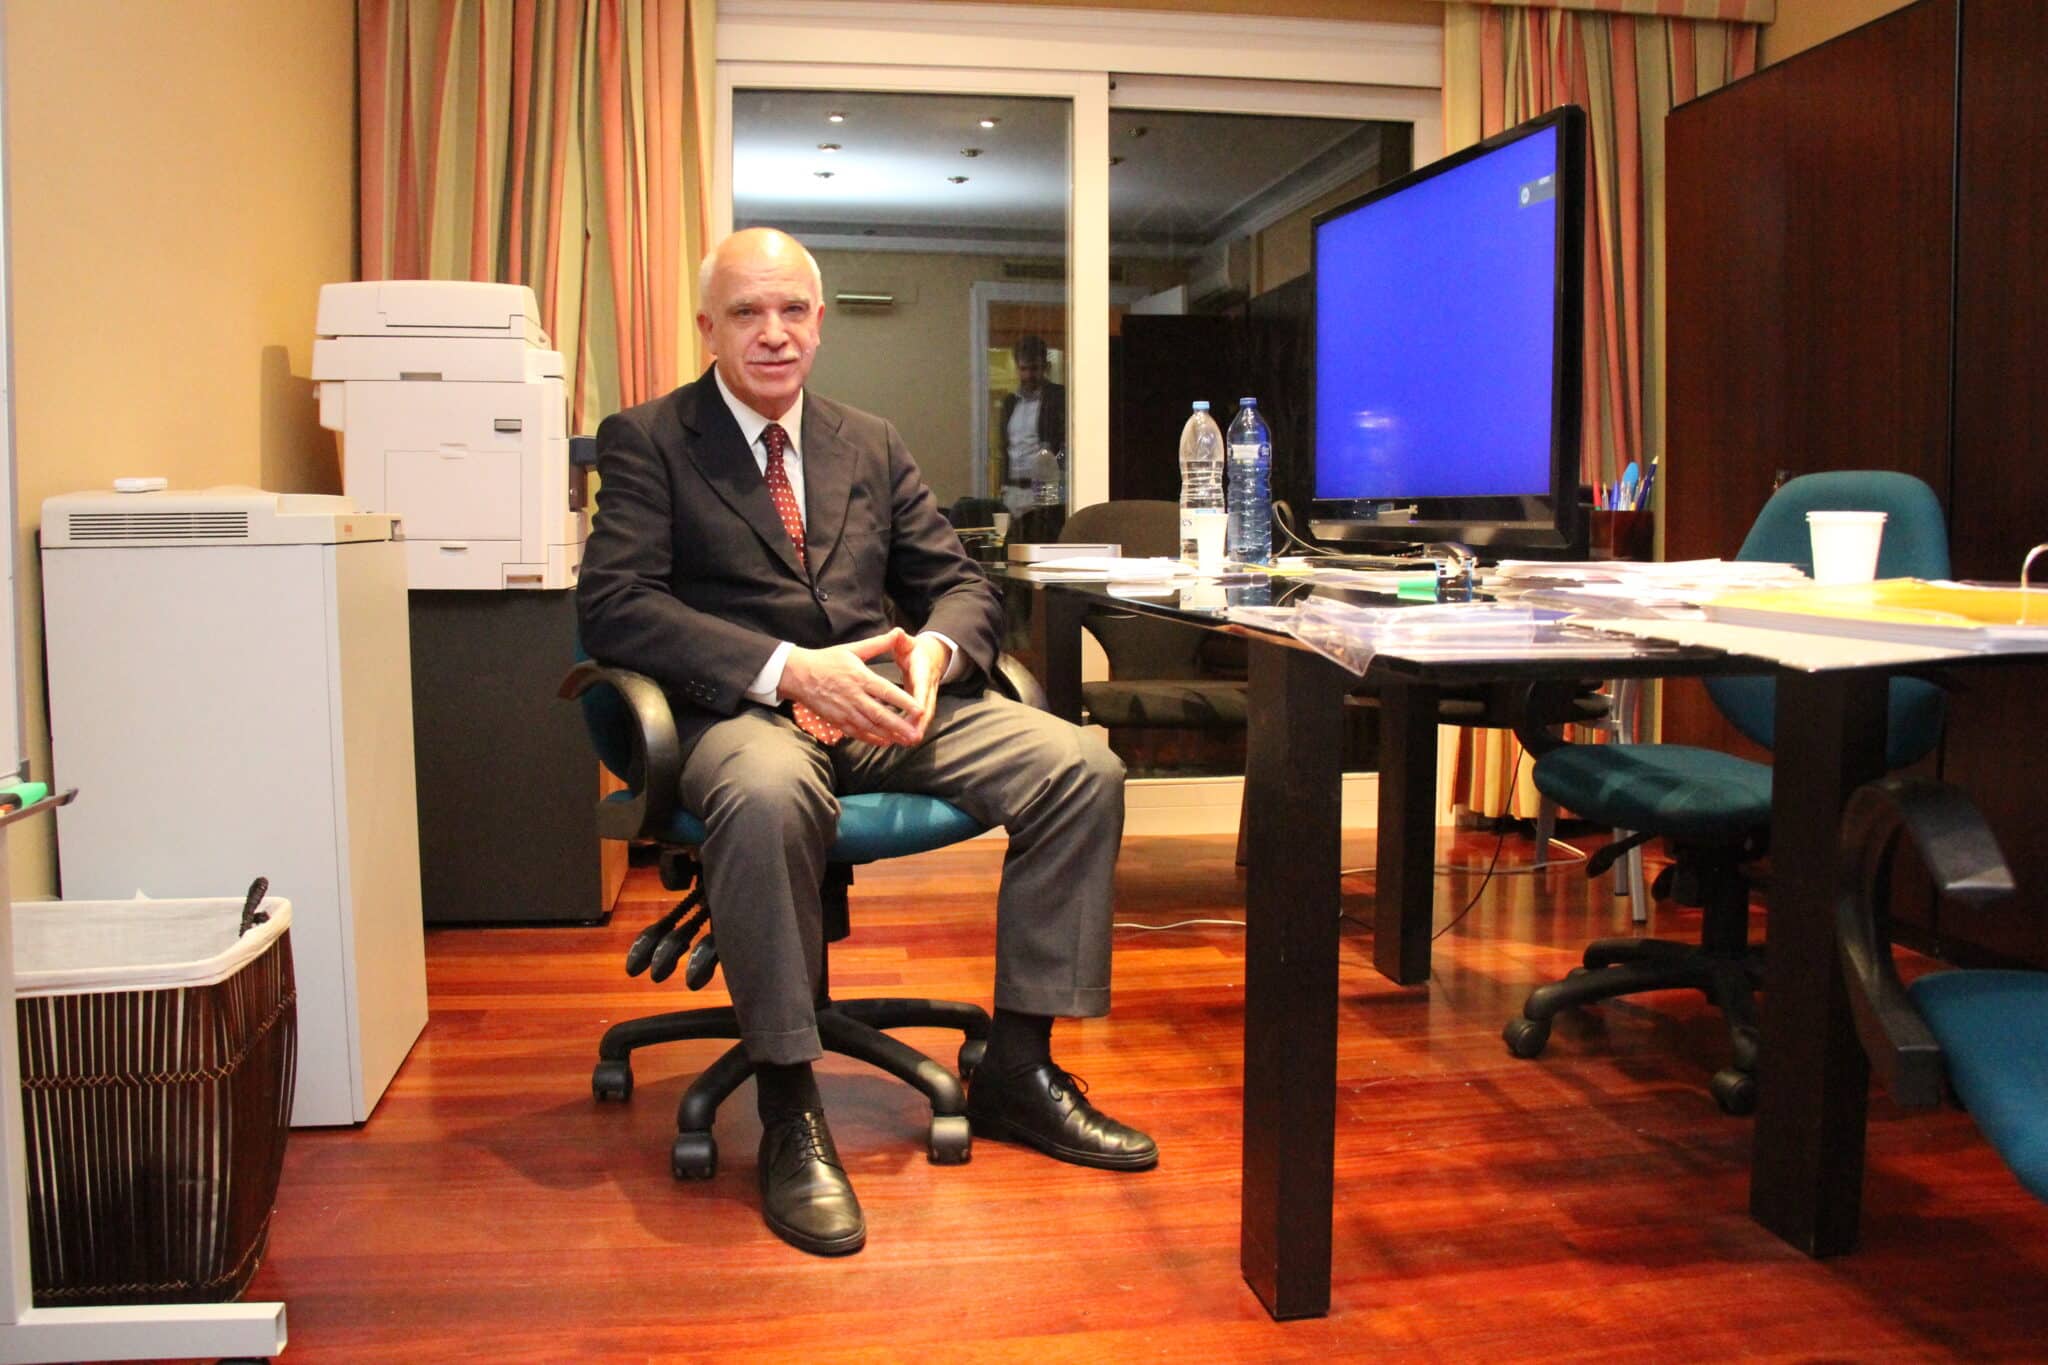 Eduardo Pascual, en su despacho de Barcelona antes de fugarse.